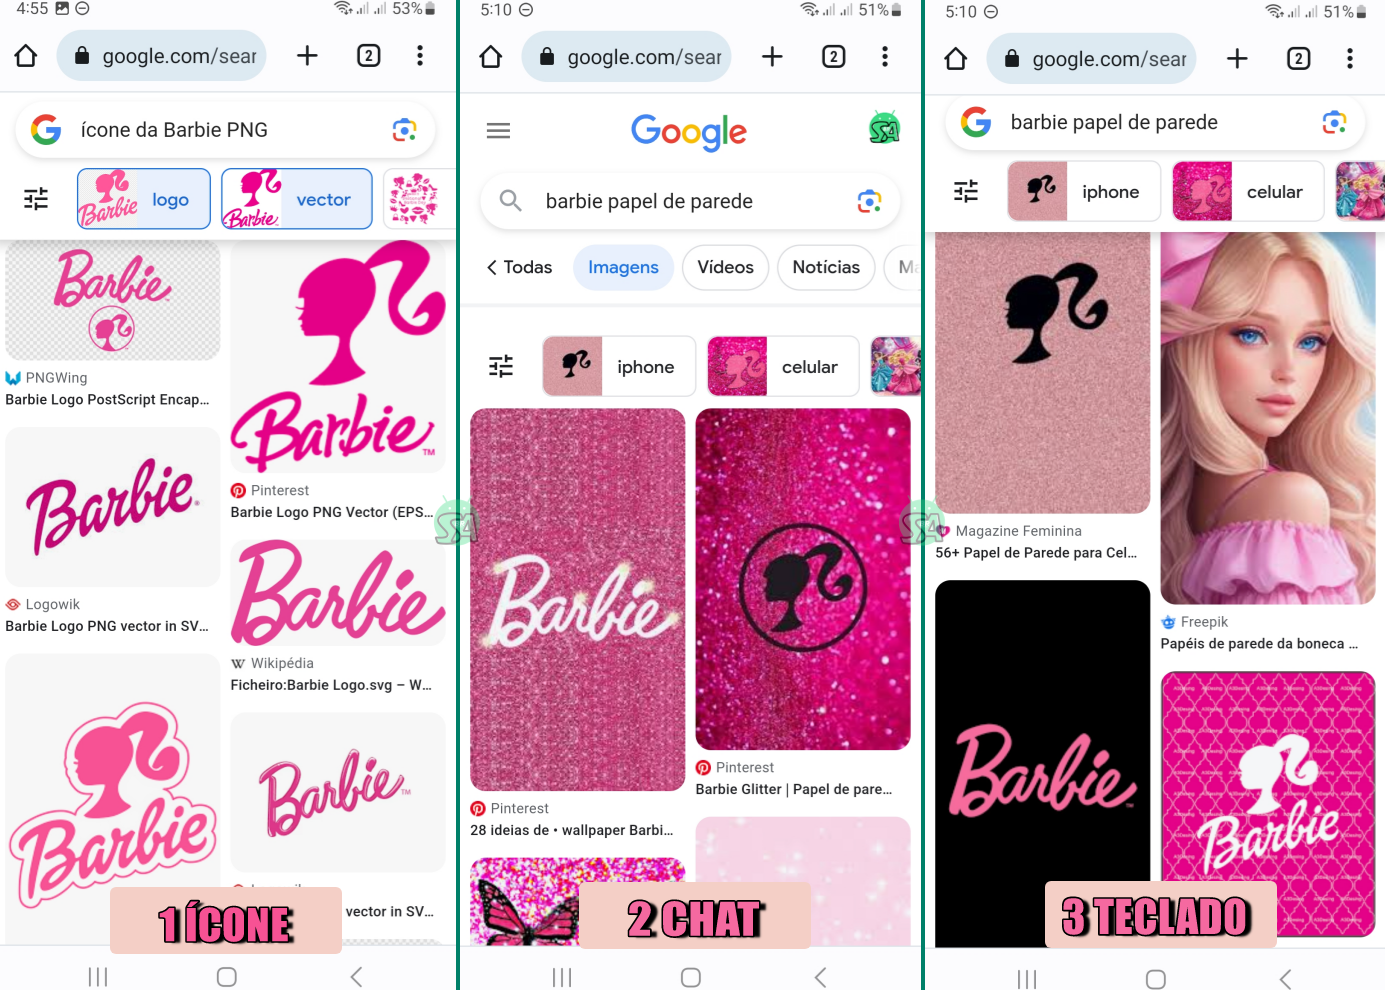 Whatsapp Modo Barbie Veja Como Ativar School Android Br 5263